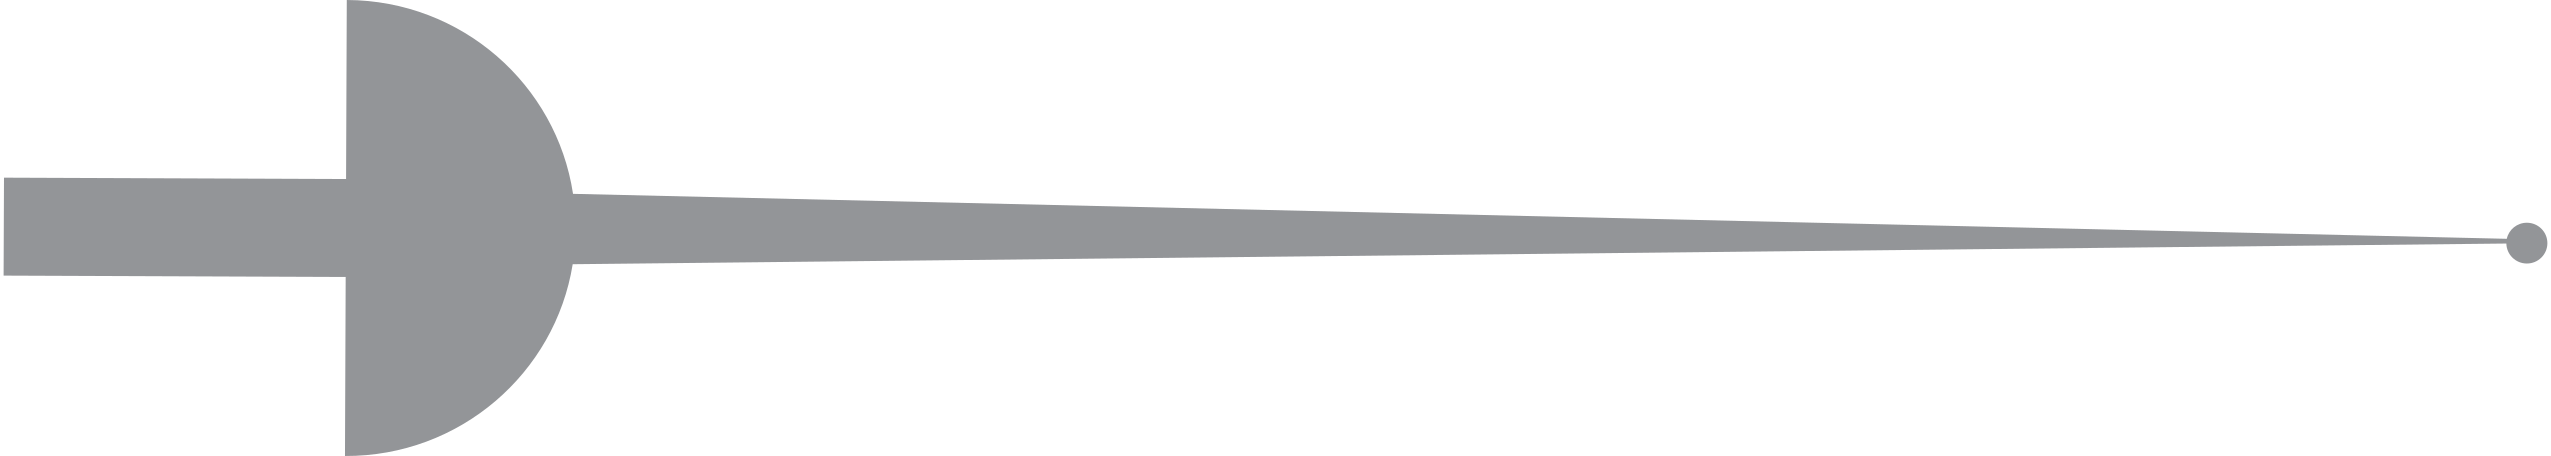 fencing sabre Illustration in PNG, SVG